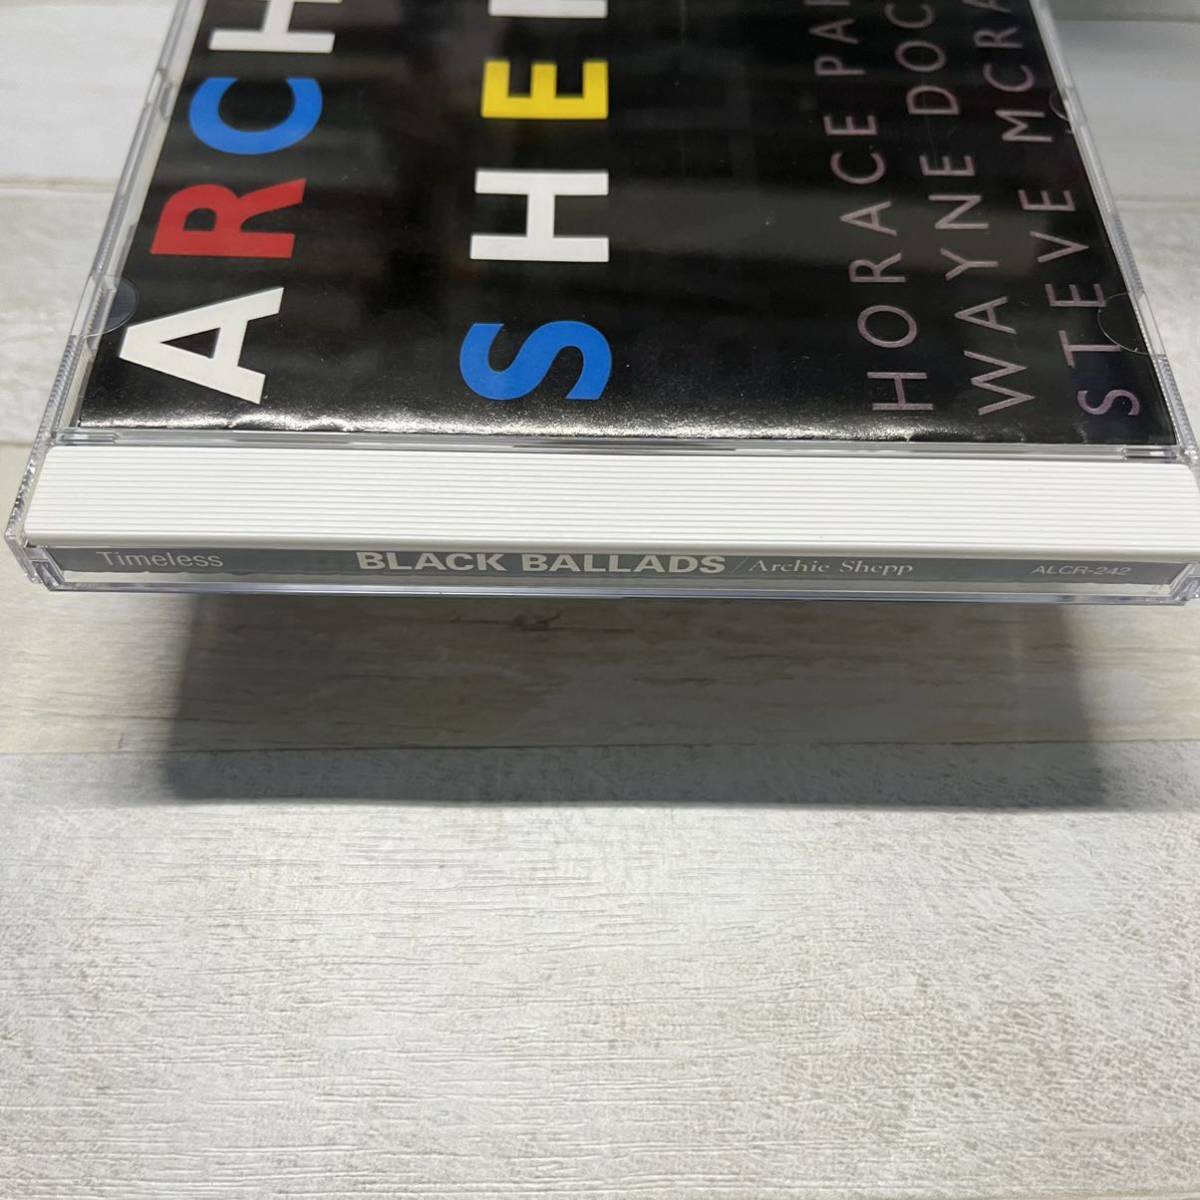 CD アーチー・シェップ Archie Shepp ブラック・バラード_画像3